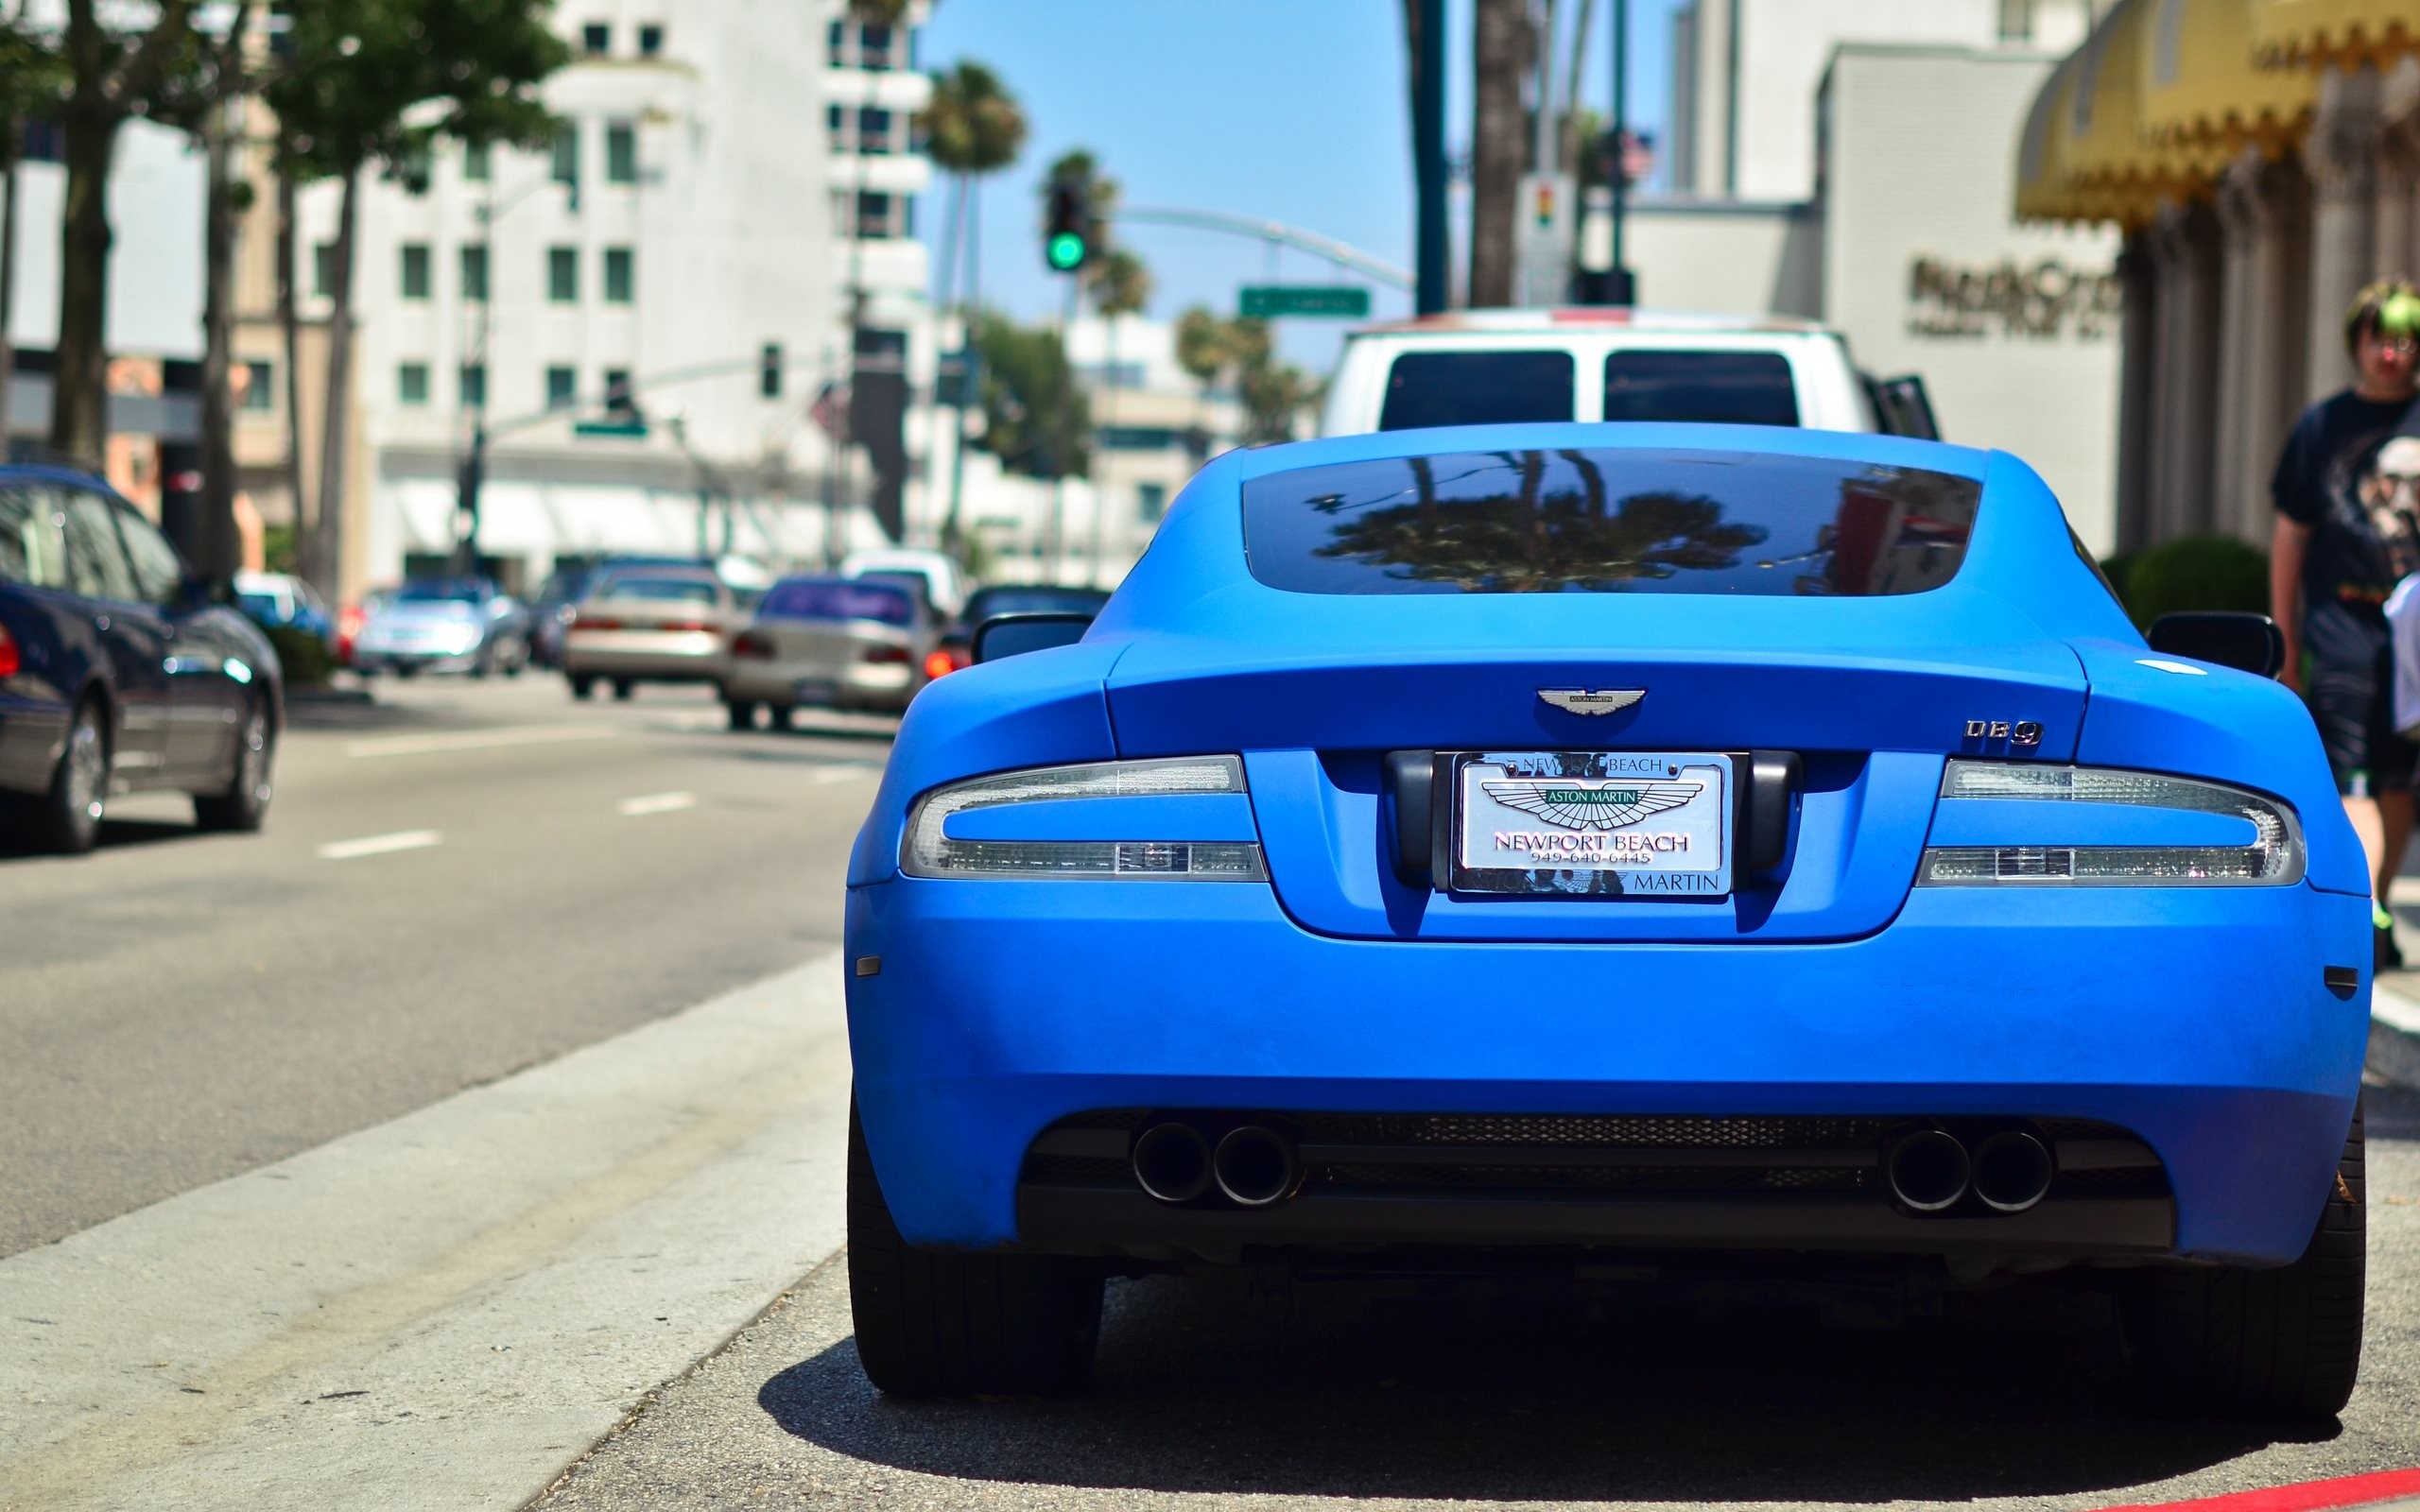 Descarga gratuita de fondo de pantalla para móvil de Aston Martin, Vehículos.